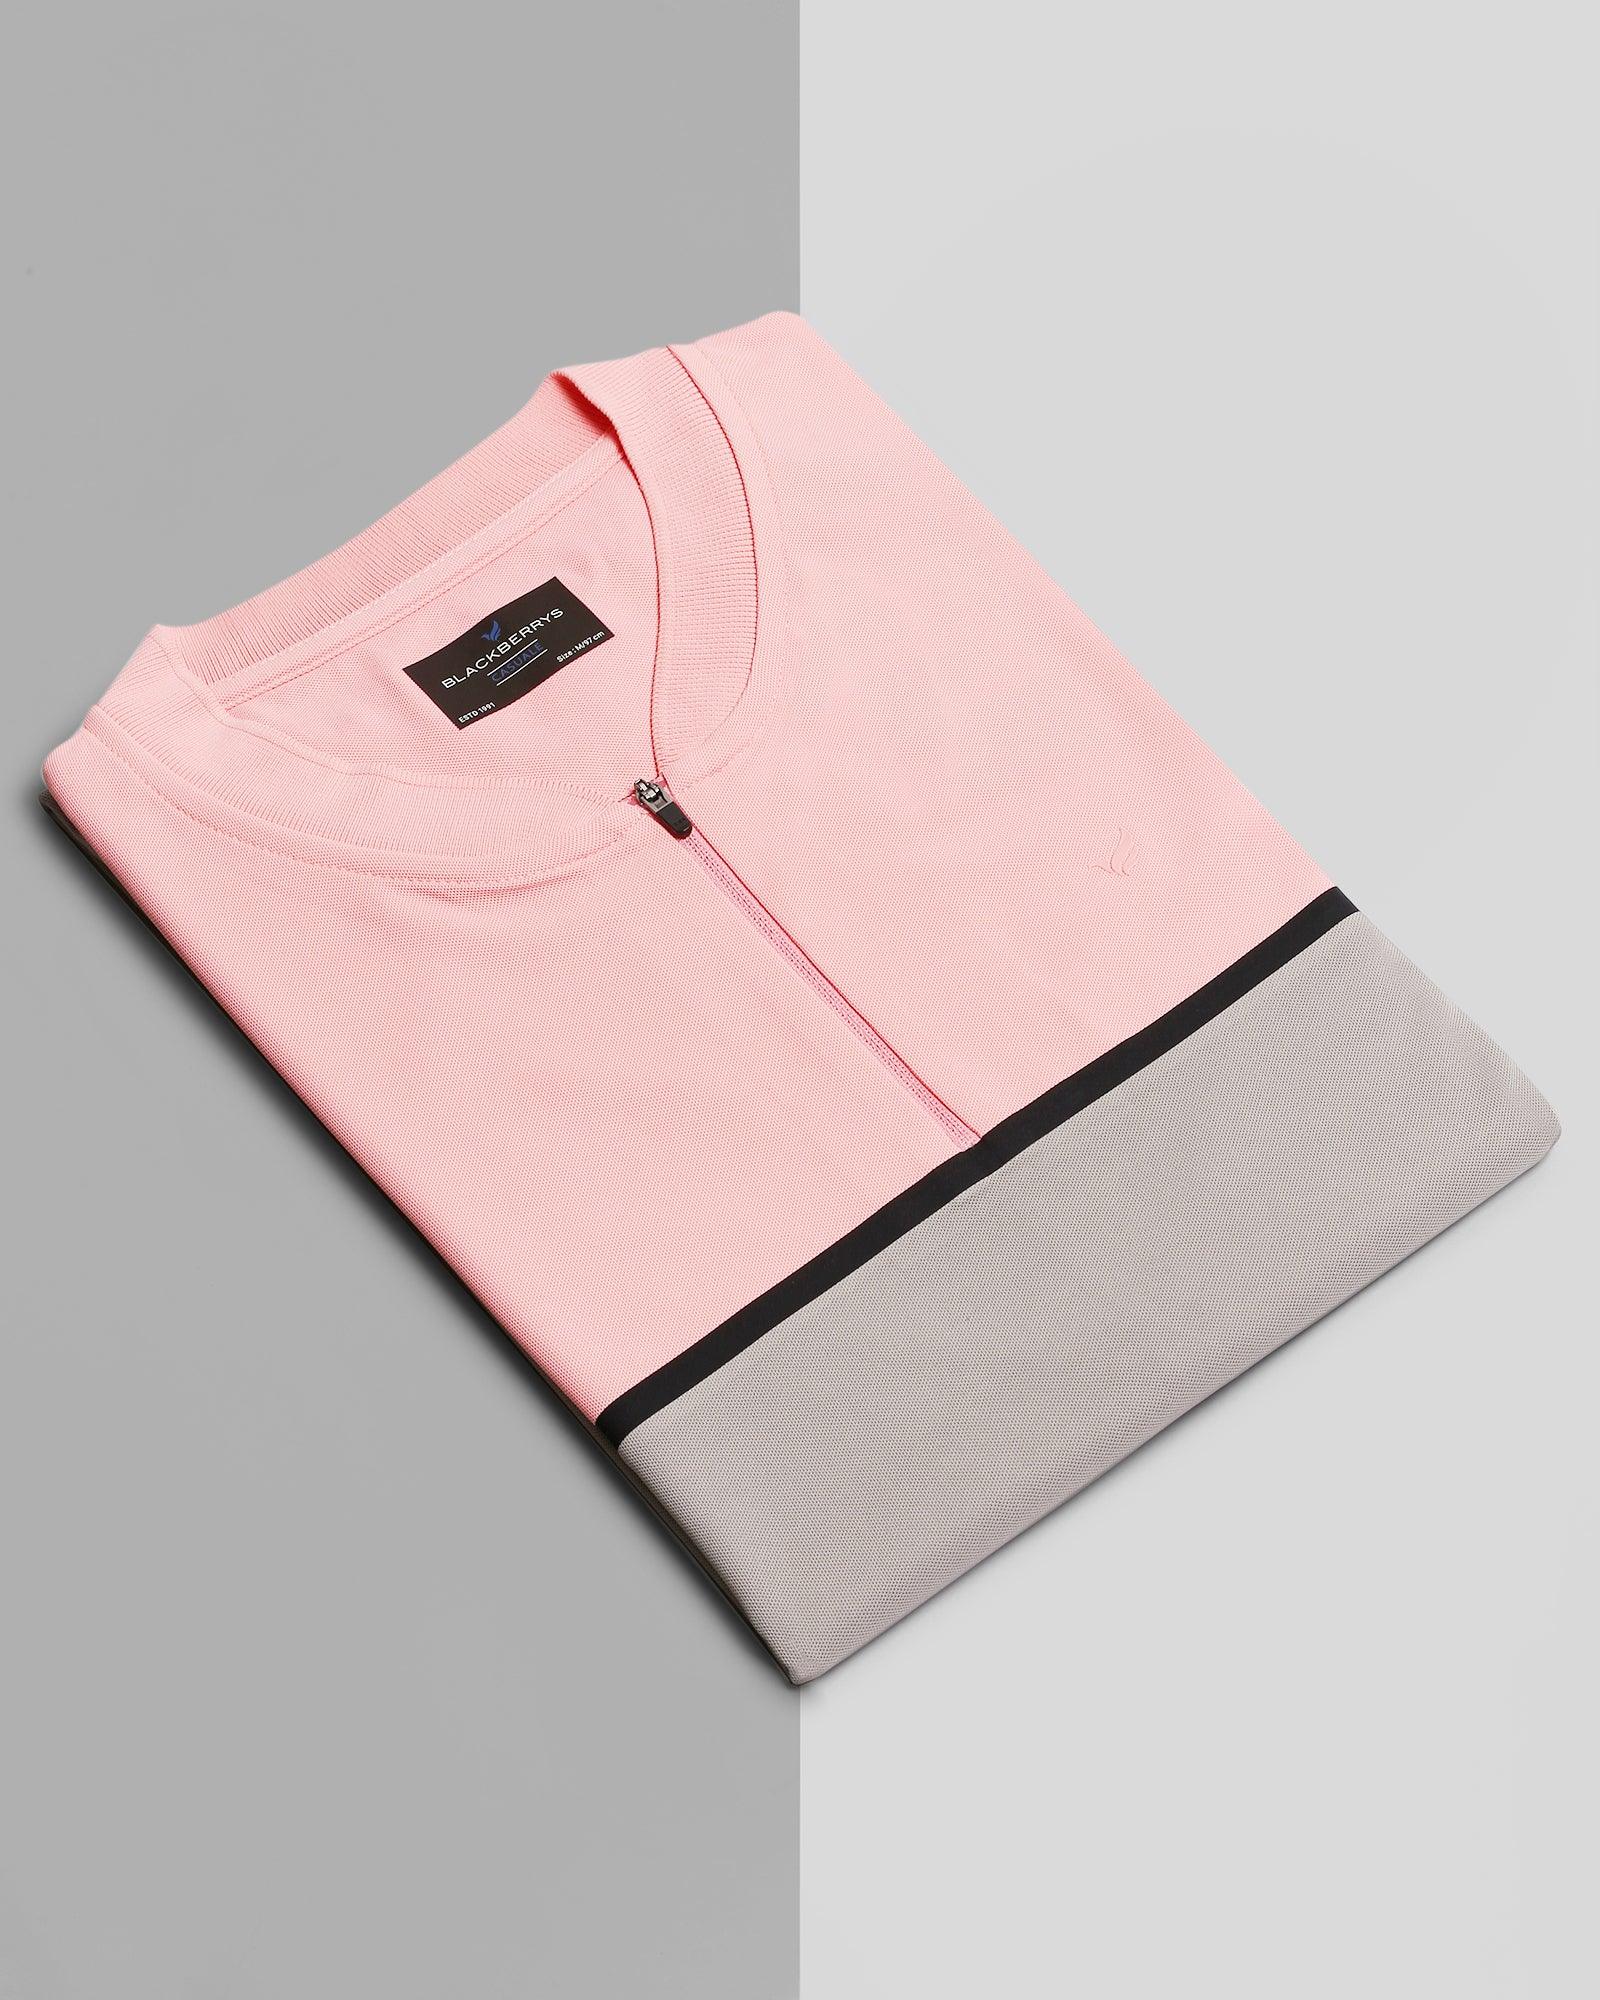 TechPro Henley Collar Pink Textured T Shirt - Bond